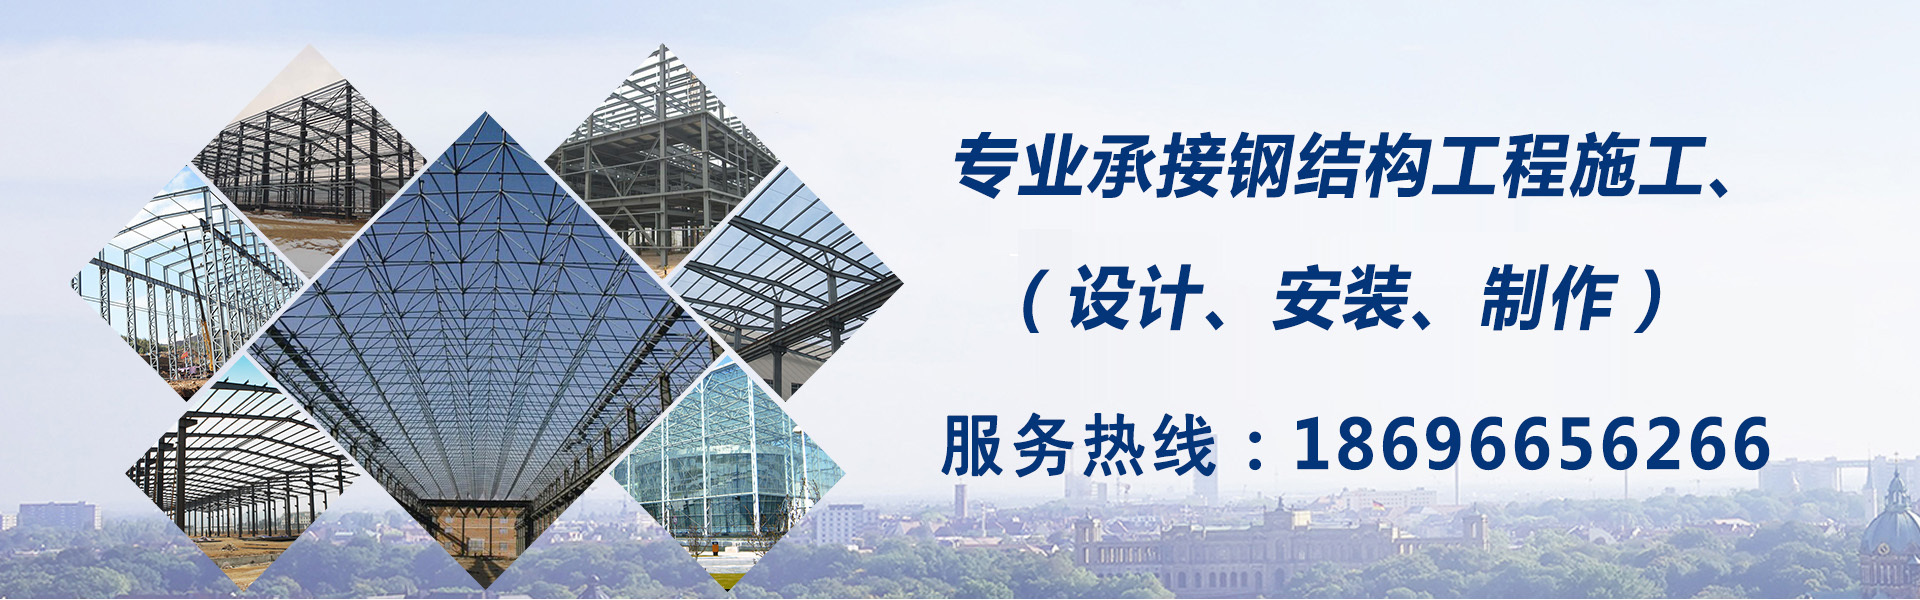 重慶億晟專業承接：重慶鋼結構工程施工、設計、安裝、制作。